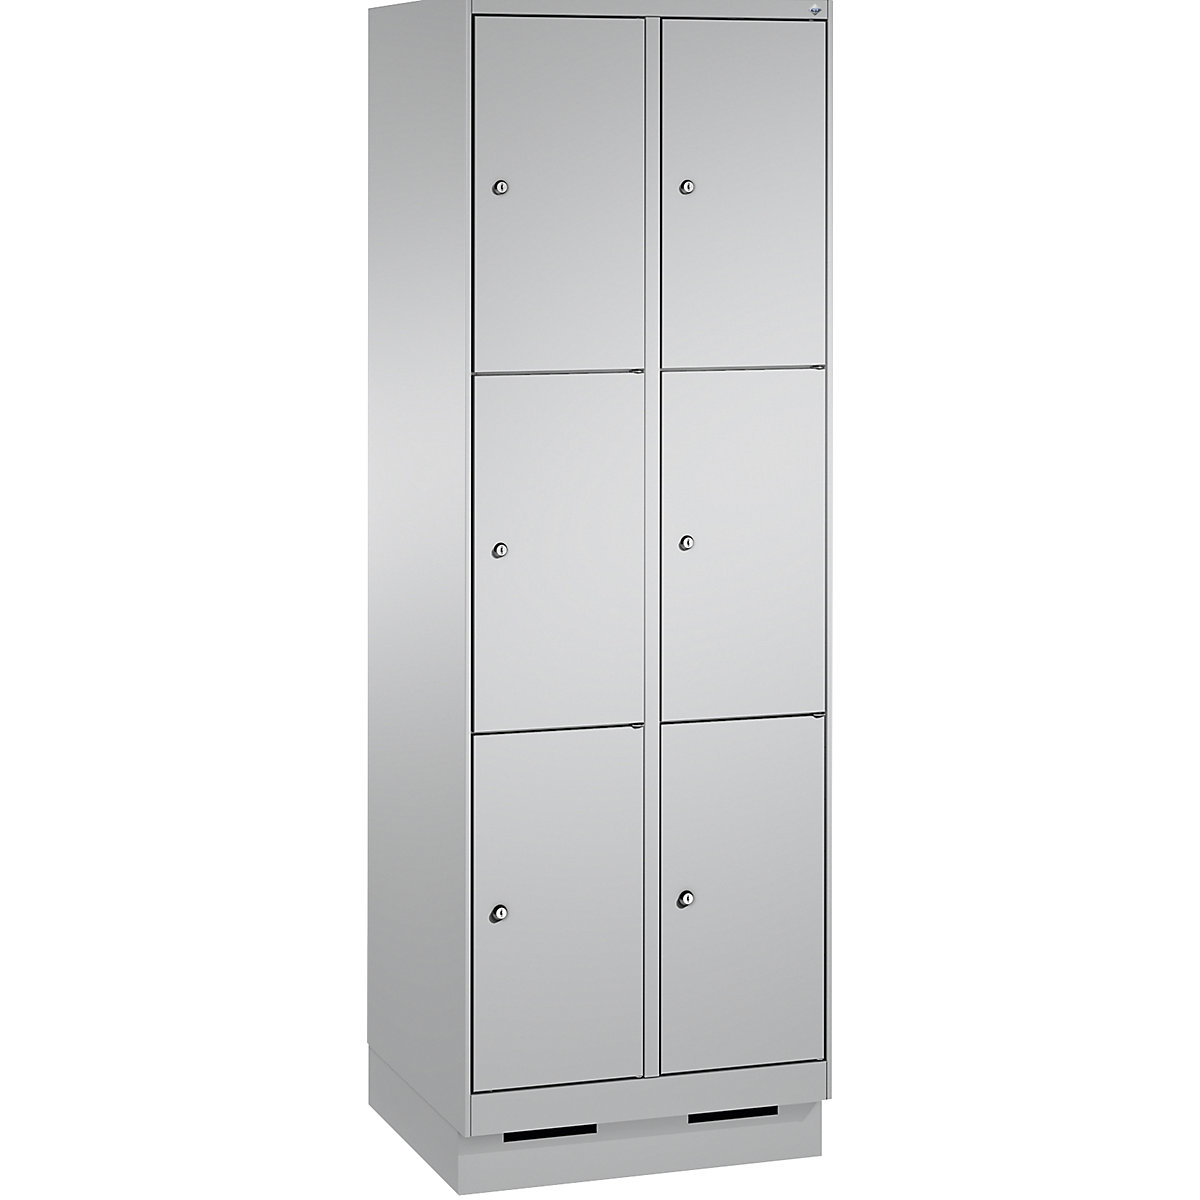 Armoire à casiers sur socle EVOLO – C+P, 2 compartiments, 3 casiers chacun, largeur compartiments 300 mm, aluminium-11